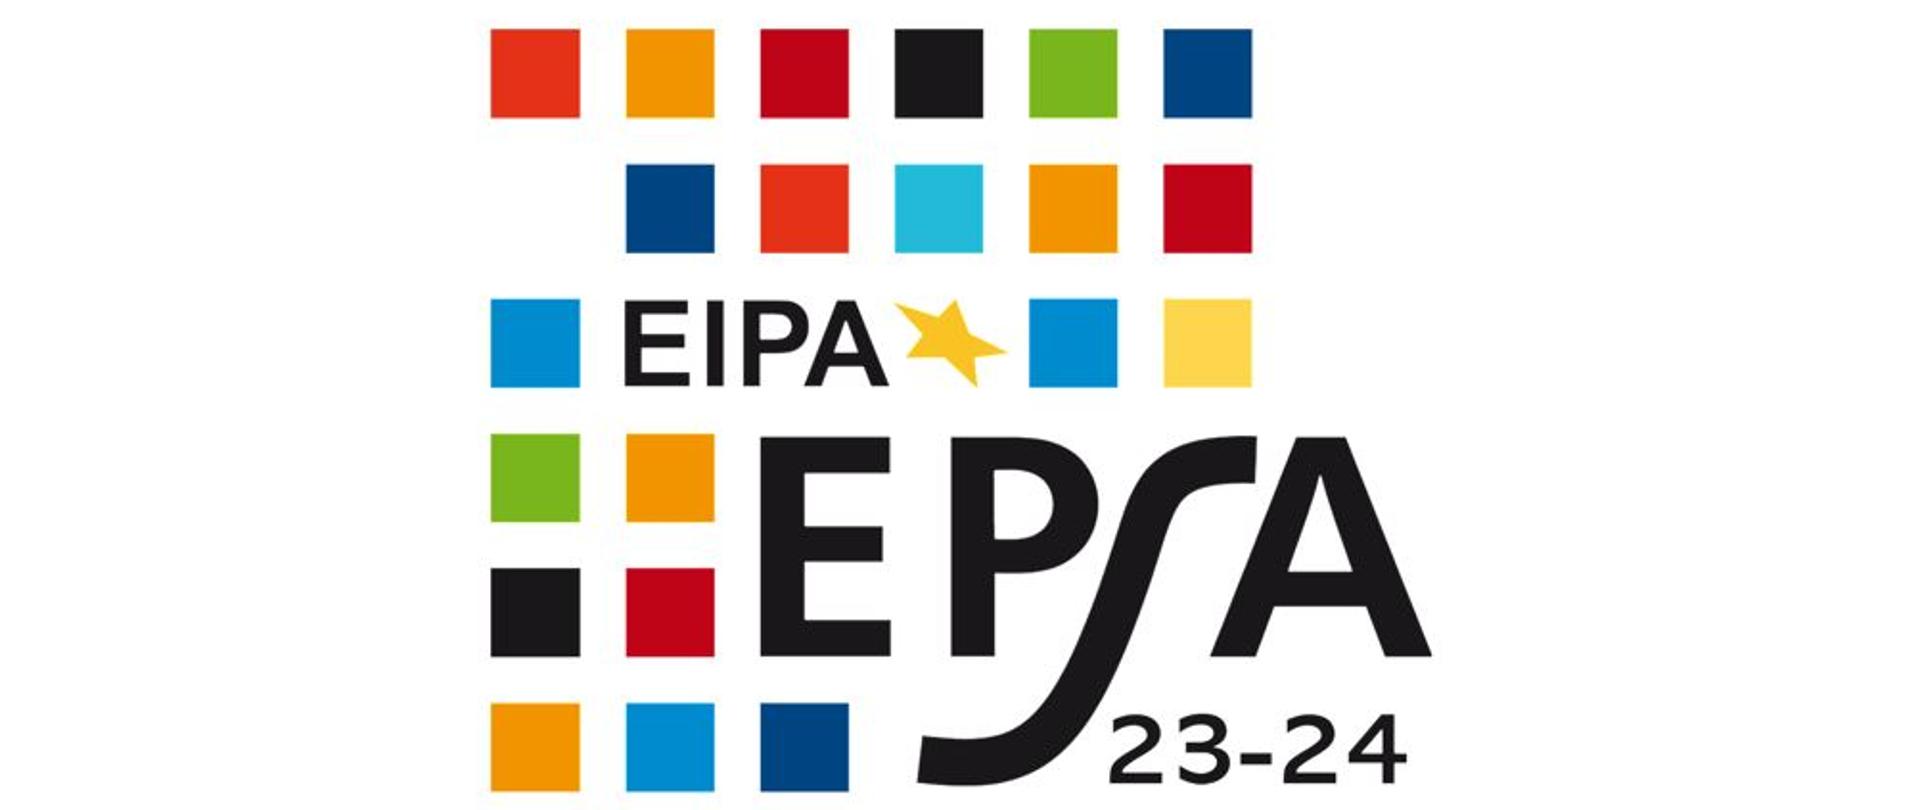 Logo EIPA EPSA 23-24